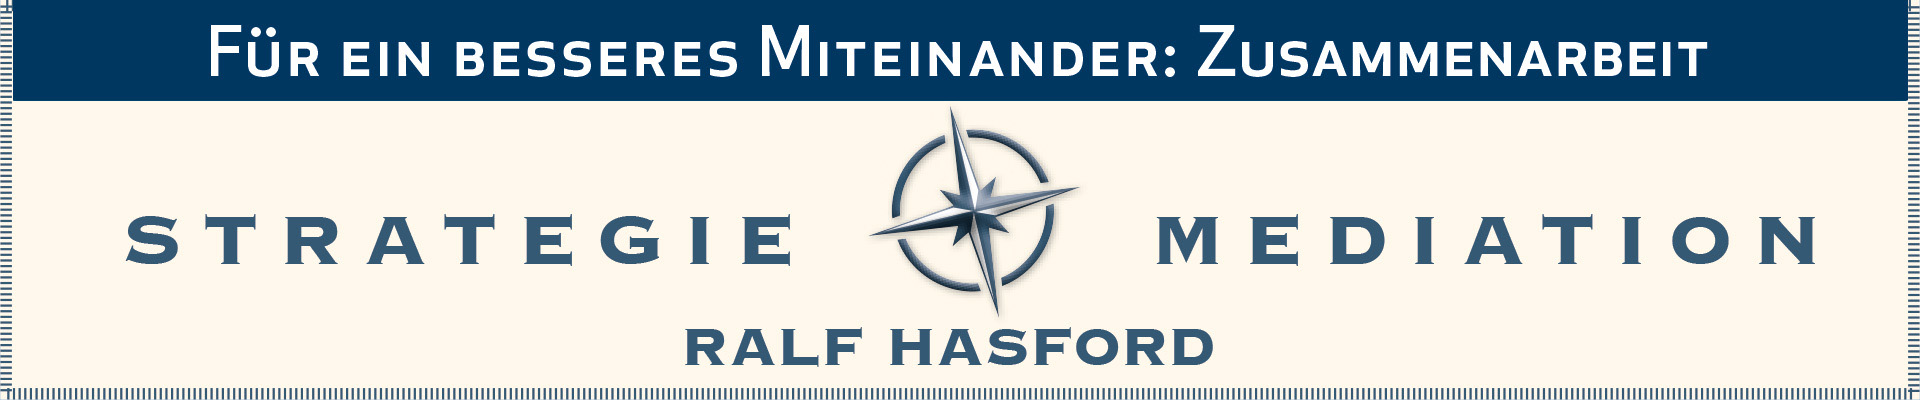 Ralf Hasford ist Moderator und Mediator. Für ein besseres Miteinander. Zusammenarbeit und Konfliktbewältigung durch Strategieentwicklung und Konflikt-Mediation in Organisationen.